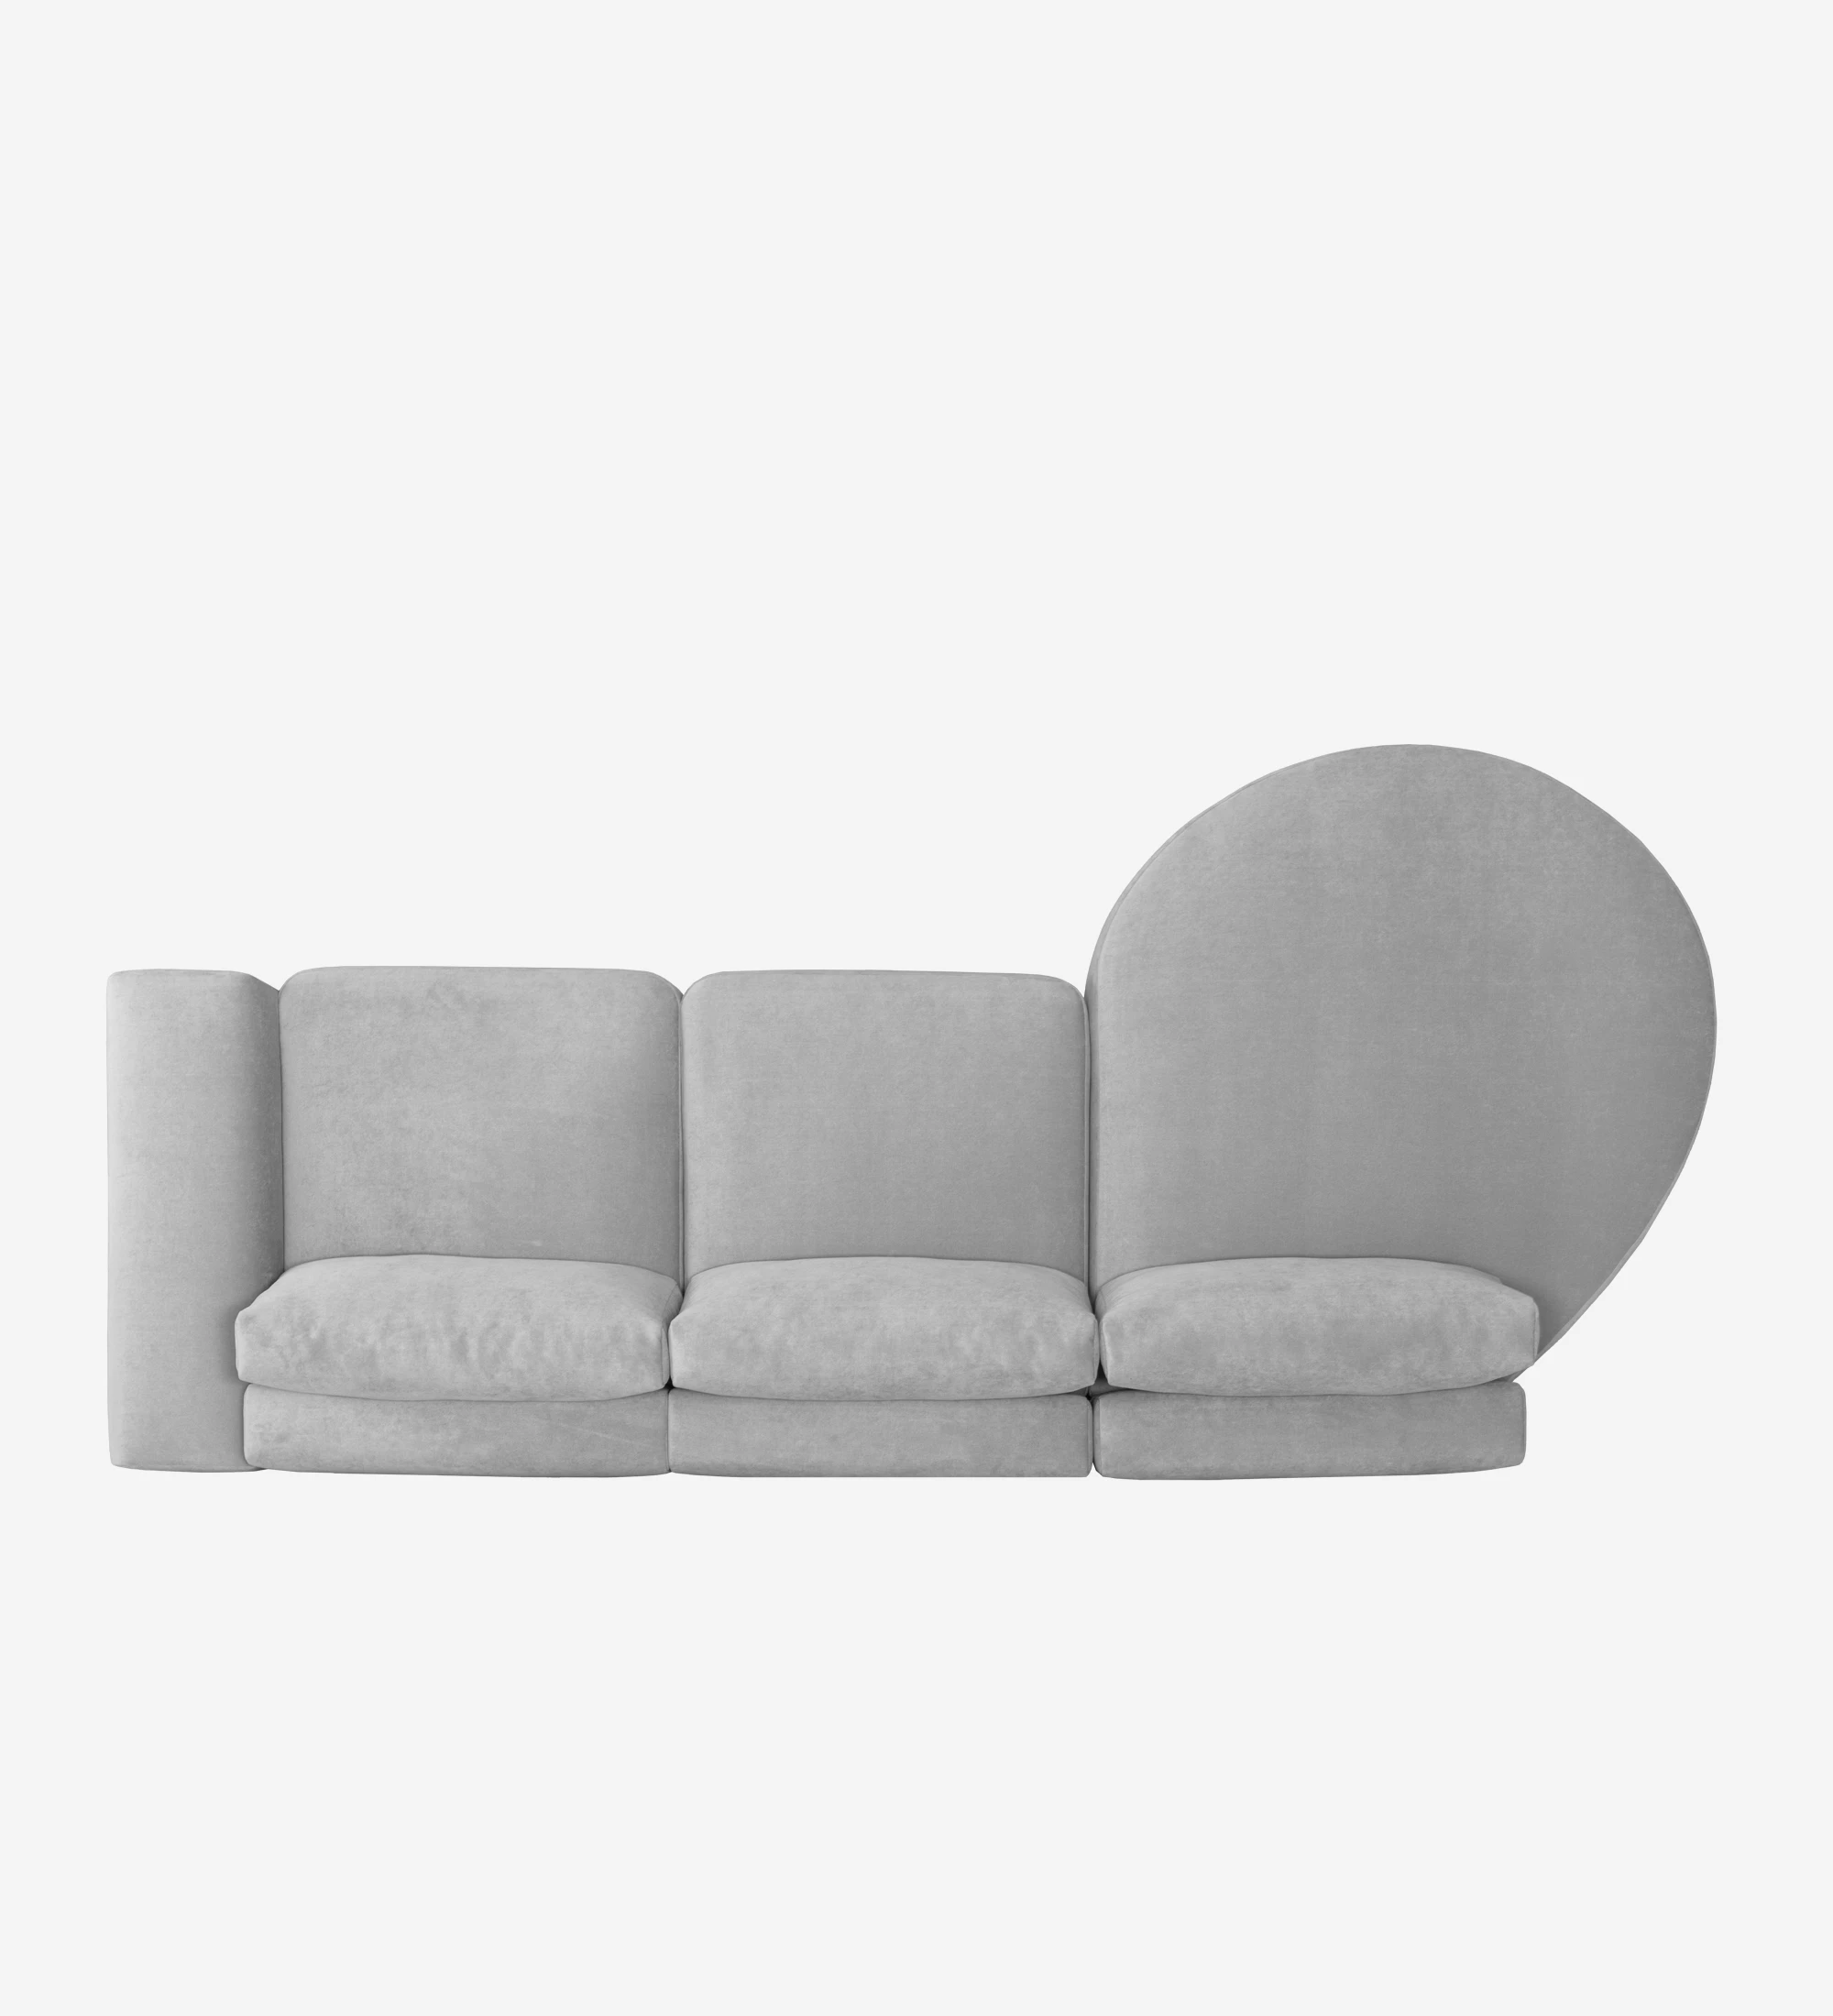 Sofá Paris 2 plazas y chaise longue izquierda, tapizado en tela gris, 307 cm.